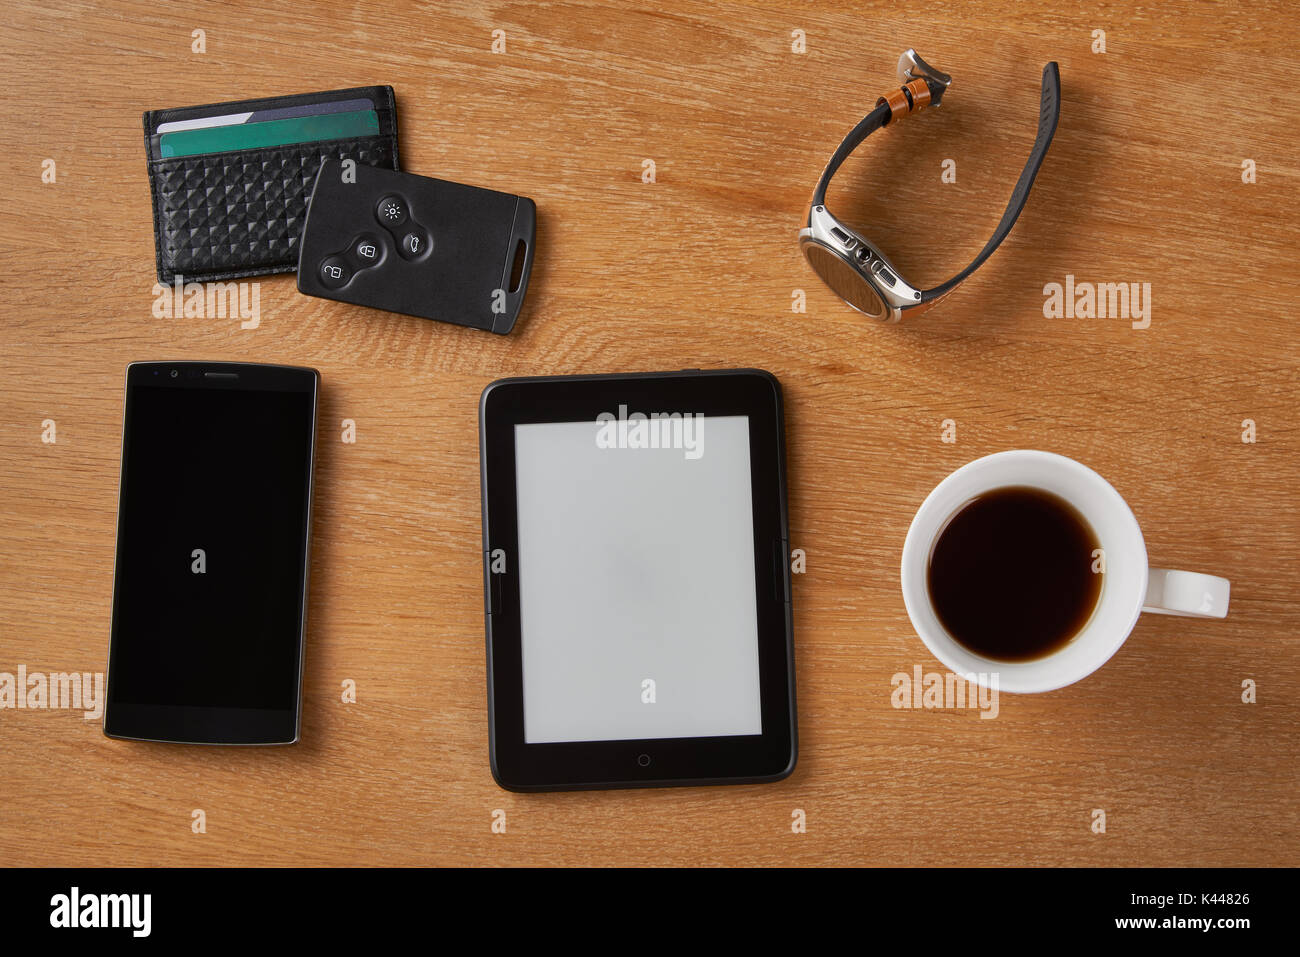 E-livre avec carte à puce, clé wallet, smart watch, smart phone et une tasse de café sur une table en bois. L'appareil est un appareil dédié pour readin Banque D'Images